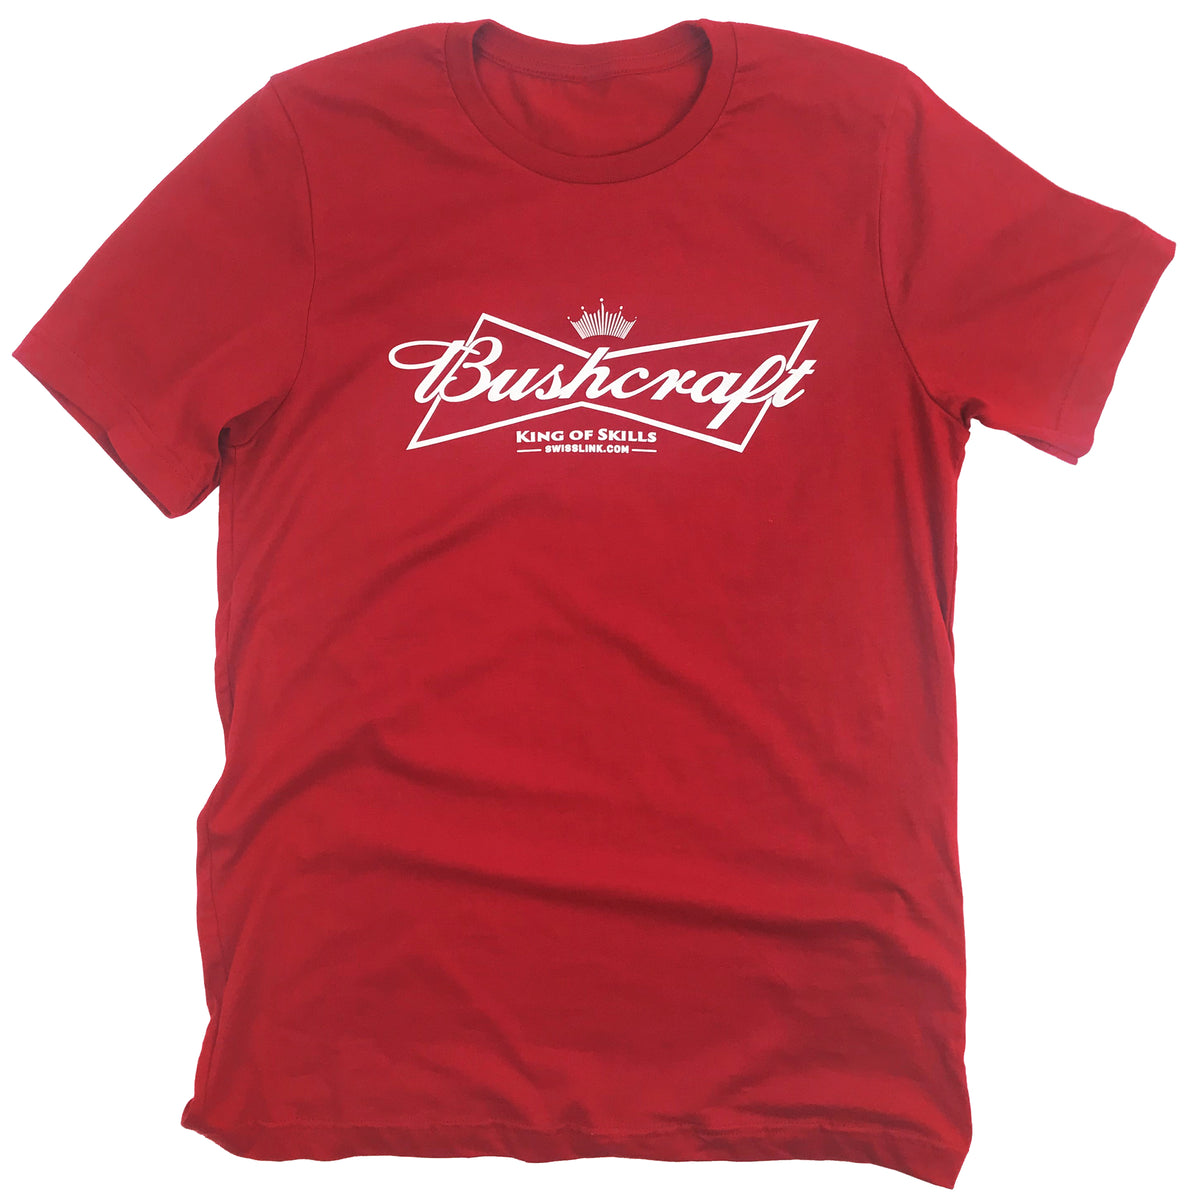 Bushcraft—King of Skills T-Shirt